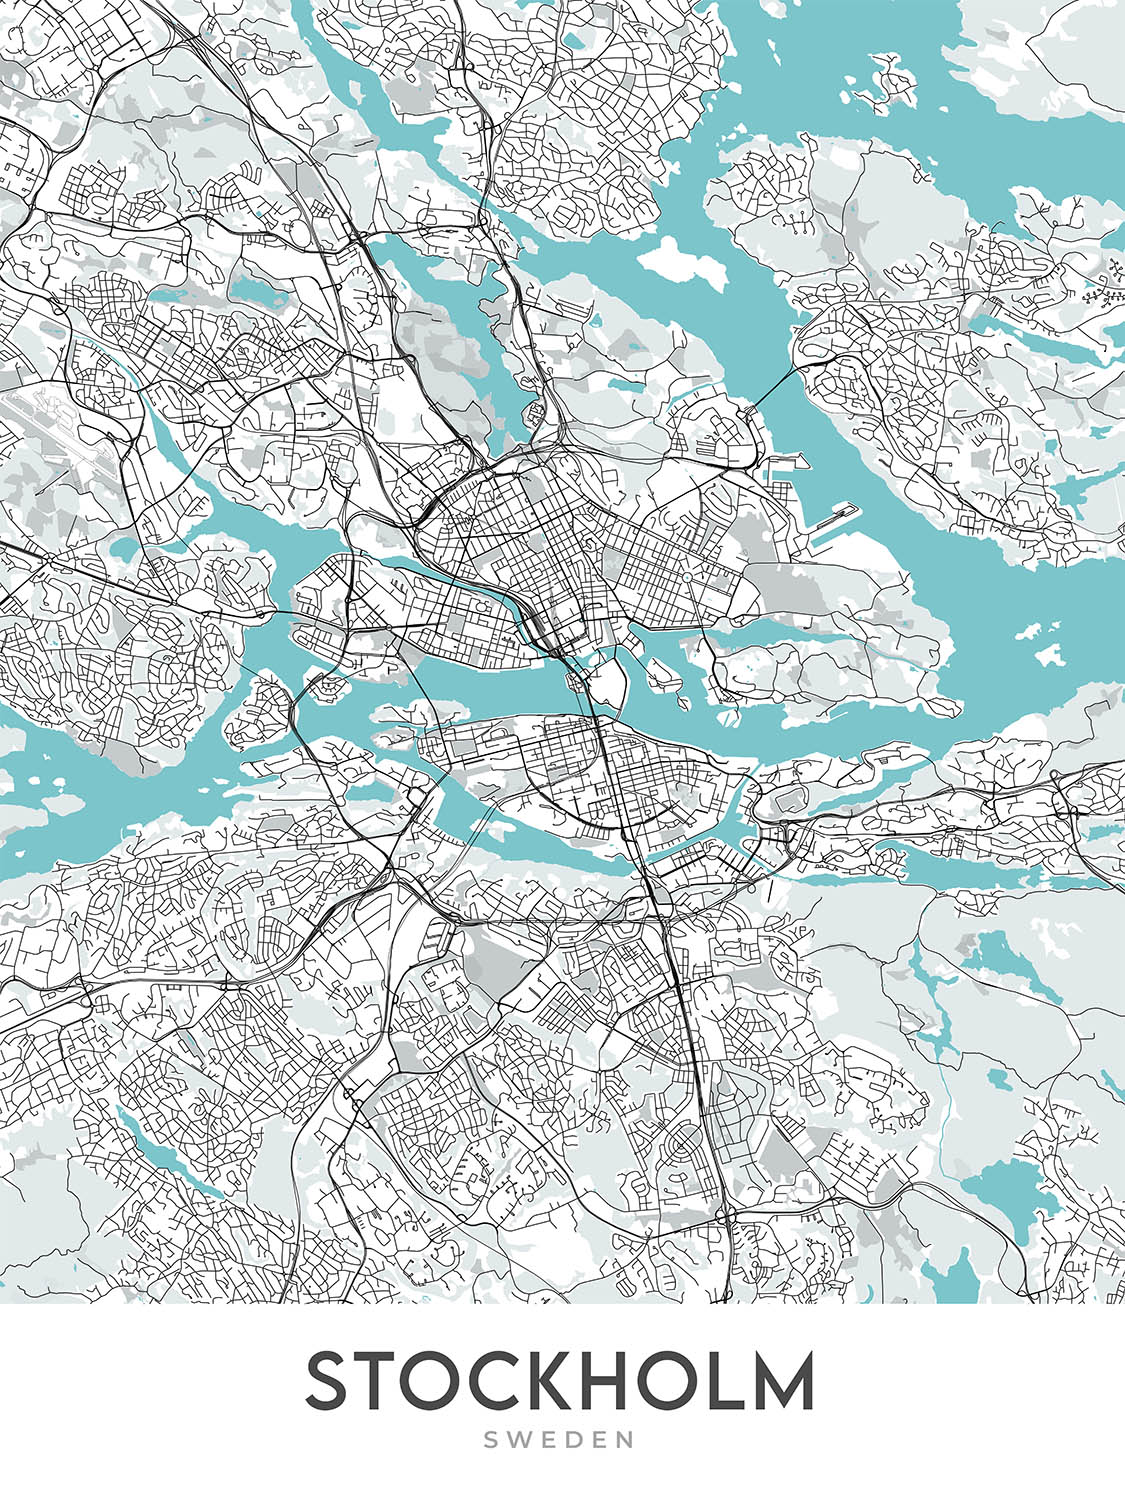 Plan de la ville moderne de Stockholm, Suède : Gamla Stan, Palais de Stockholm, Djurgården, E4, E18